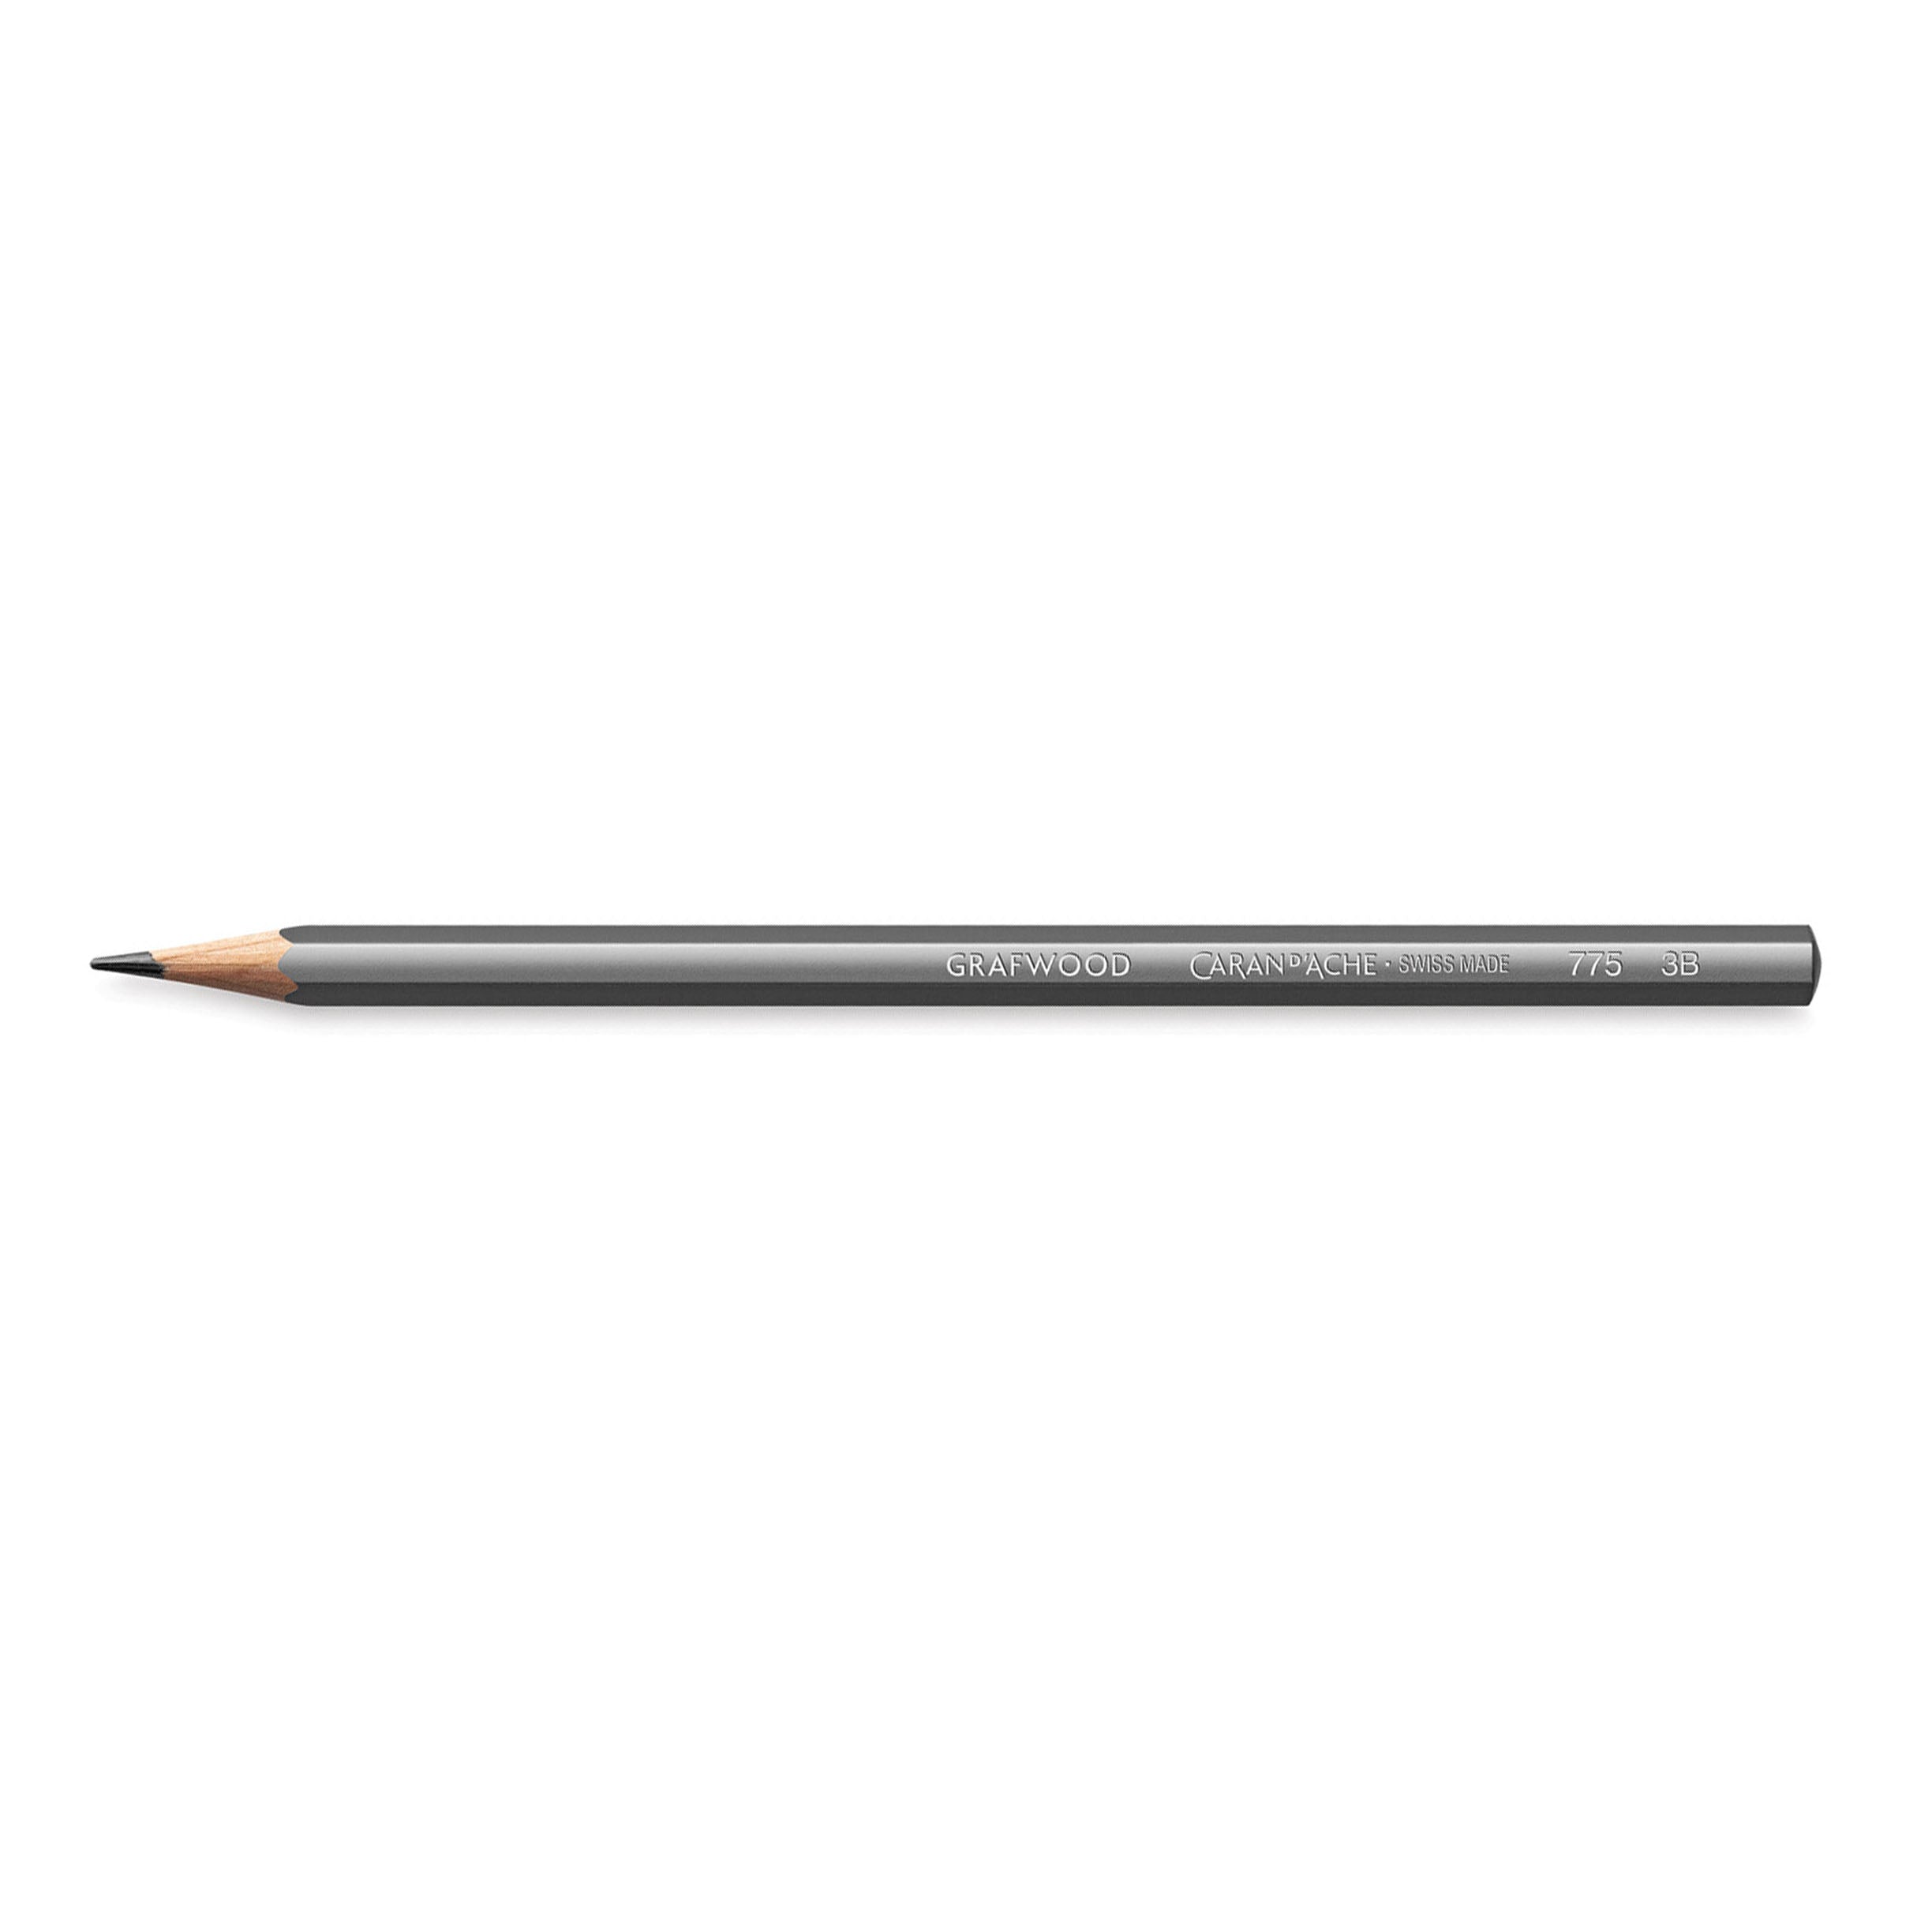 Caran d’Ache Grafwood Pencil